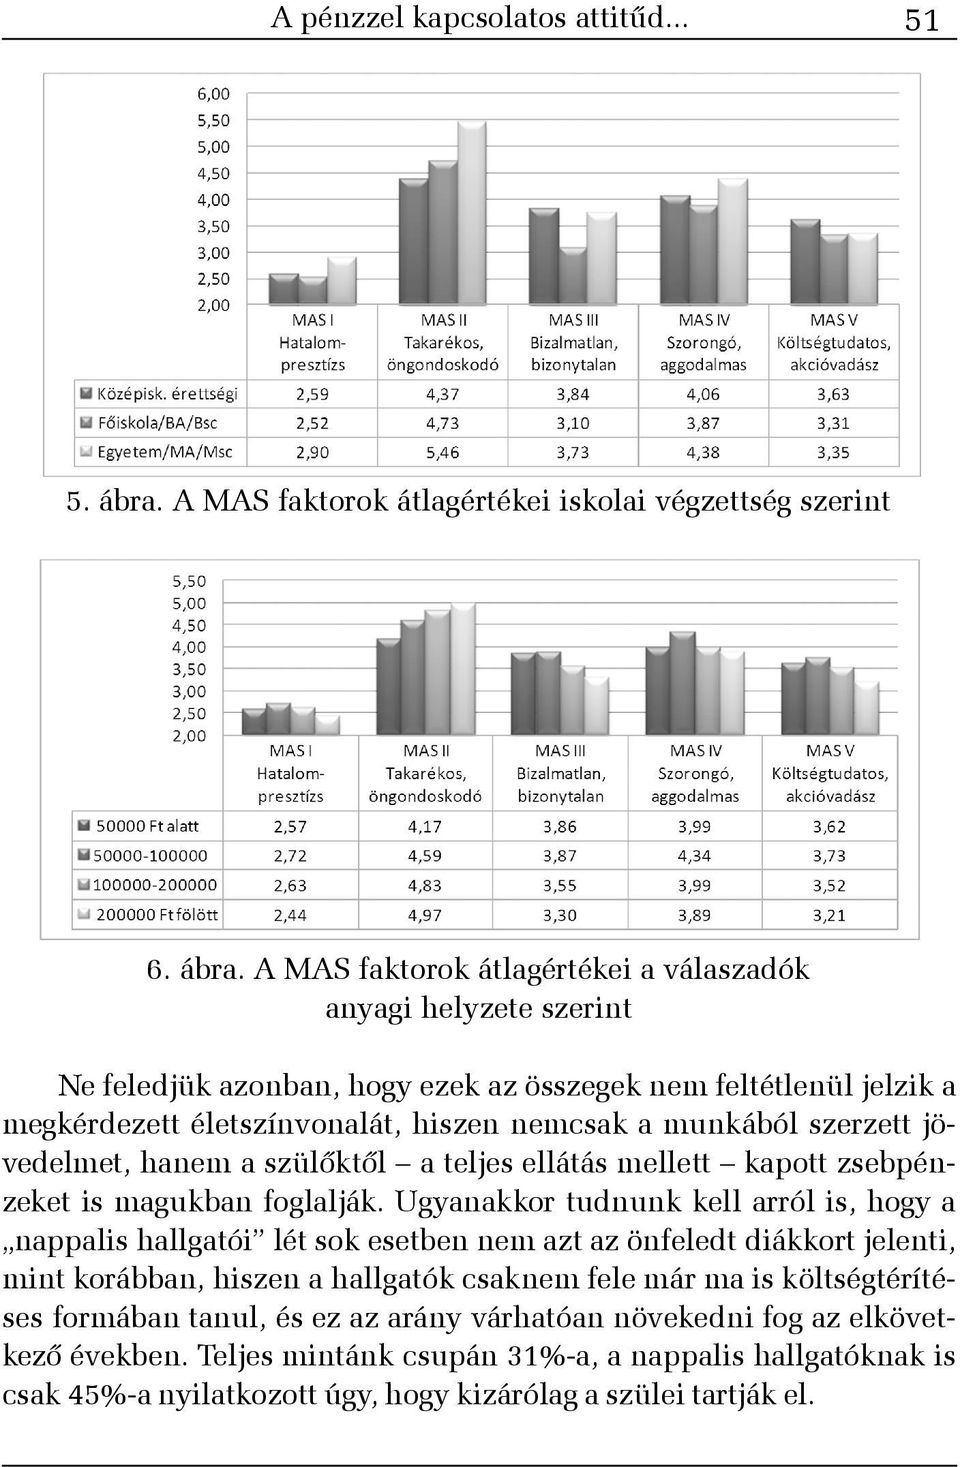 A MAS faktorok átlagértékei a válaszadók anyagi helyzete szerint Ne feledjük azonban, hogy ezek az összegek nem feltétlenül jelzik a megkérdezett életszínvonalát, hiszen nemcsak a munkából szerzett